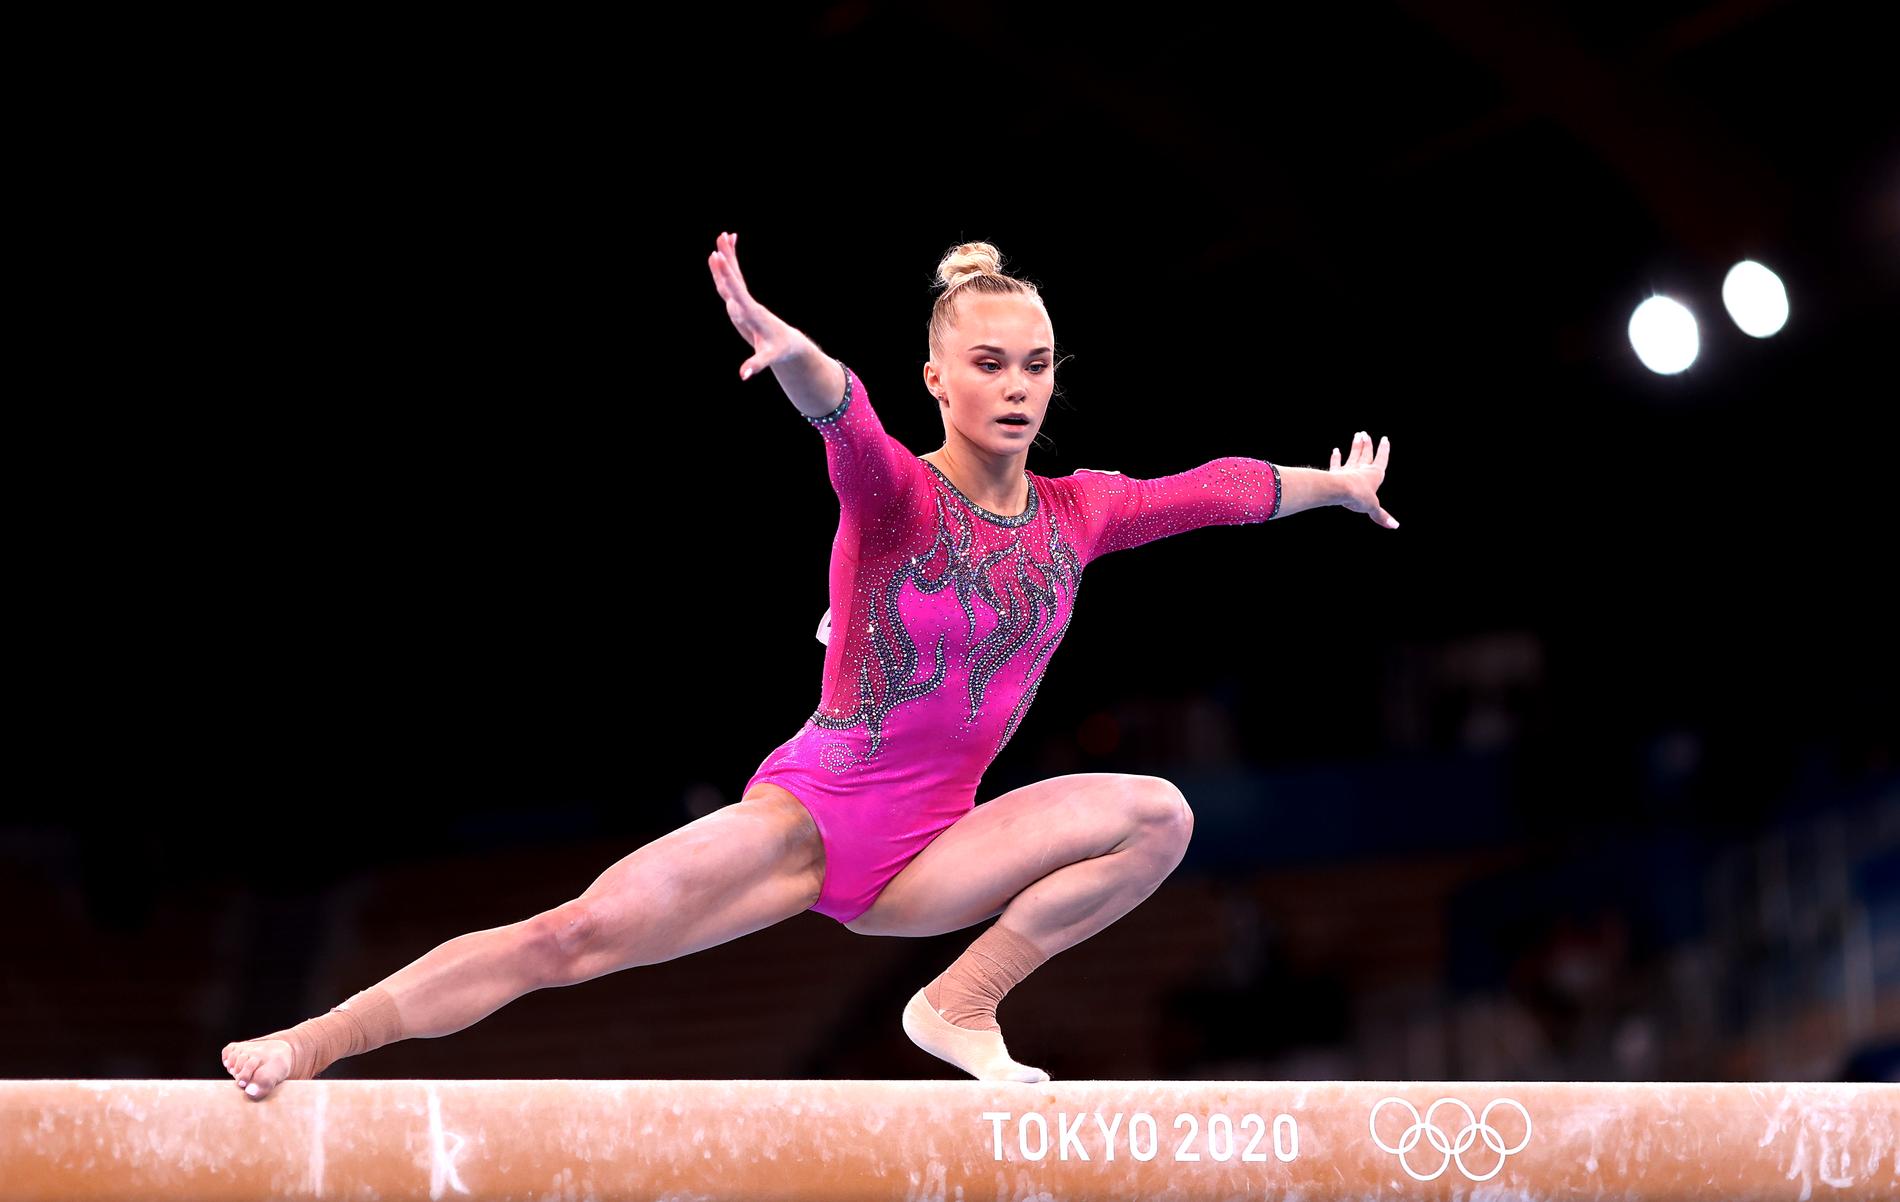 Ryska gymnasten Angelina Melnikova vann ett guld och två brons i OS i Tokyo 2020.